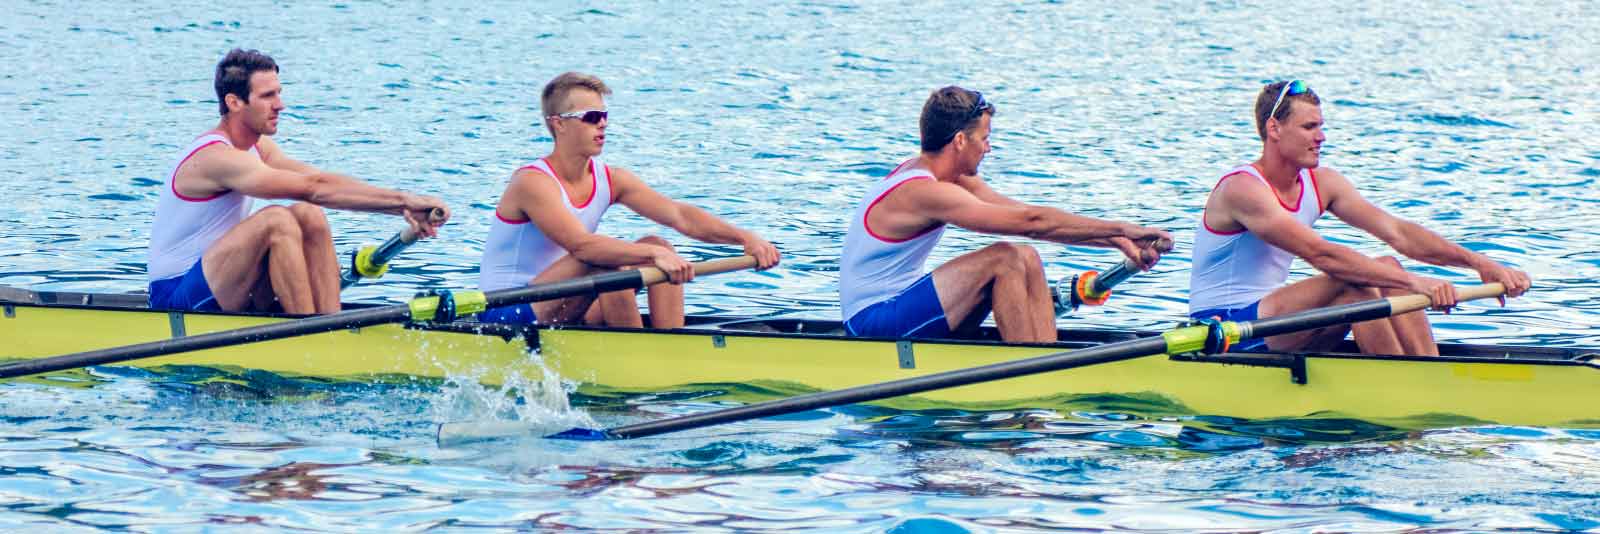 men's rowing team